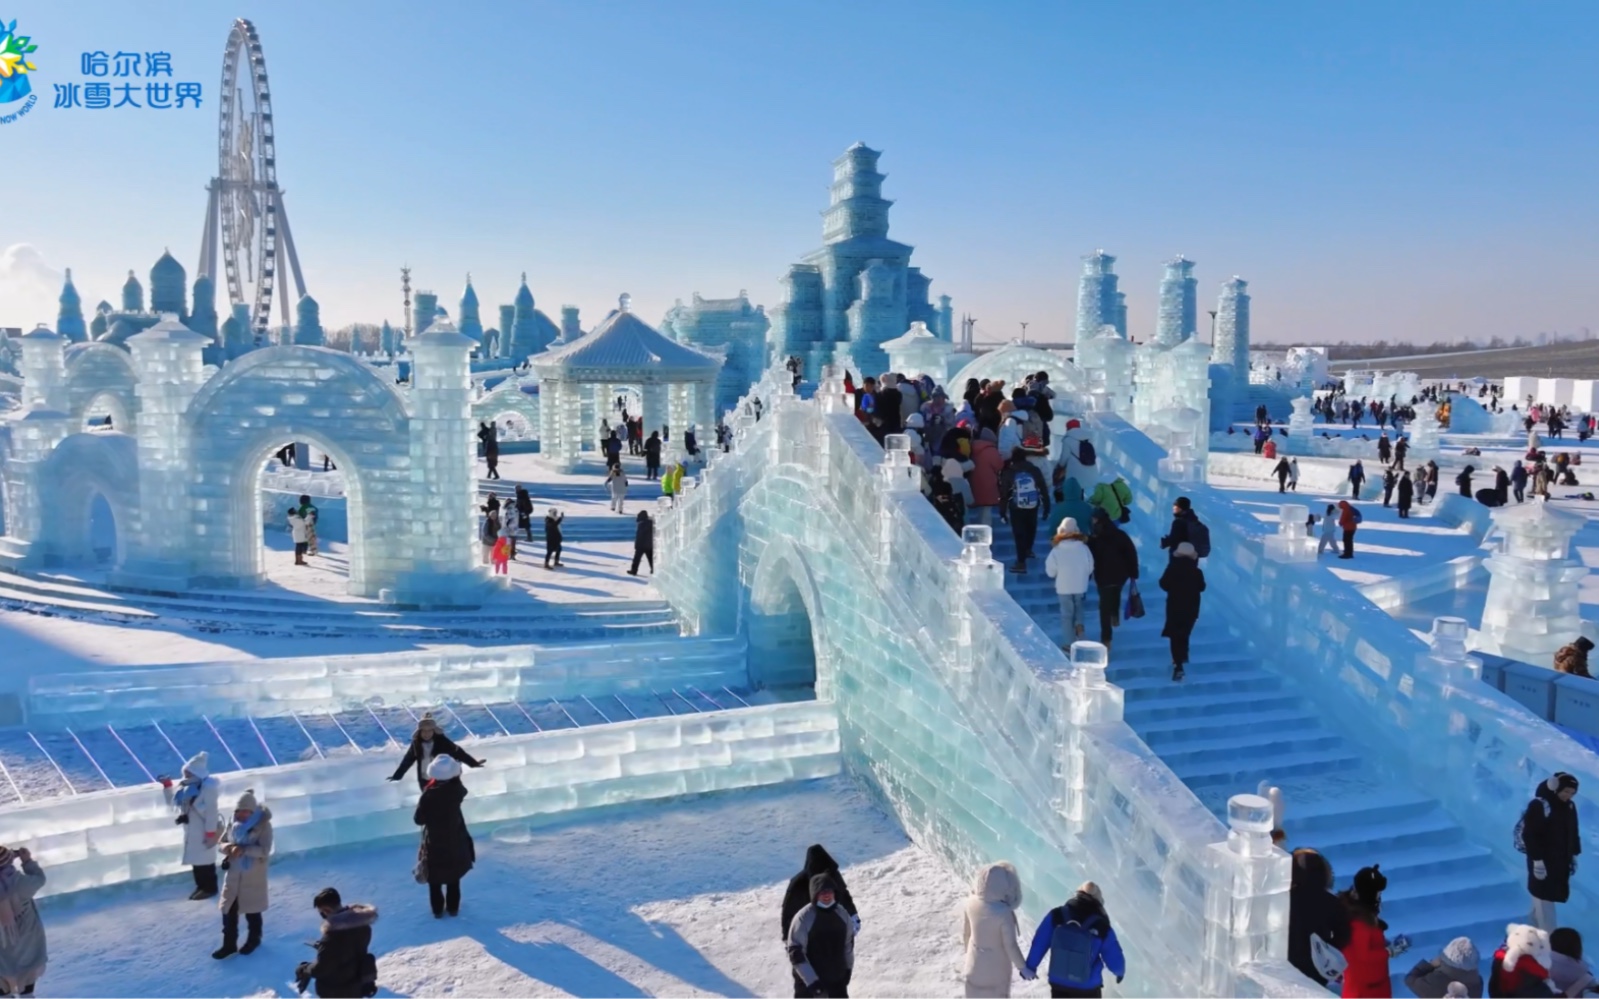 哈尔滨冰雪大世界十一点入园盛况,带您感受这座今冬最热冰雪乐园的